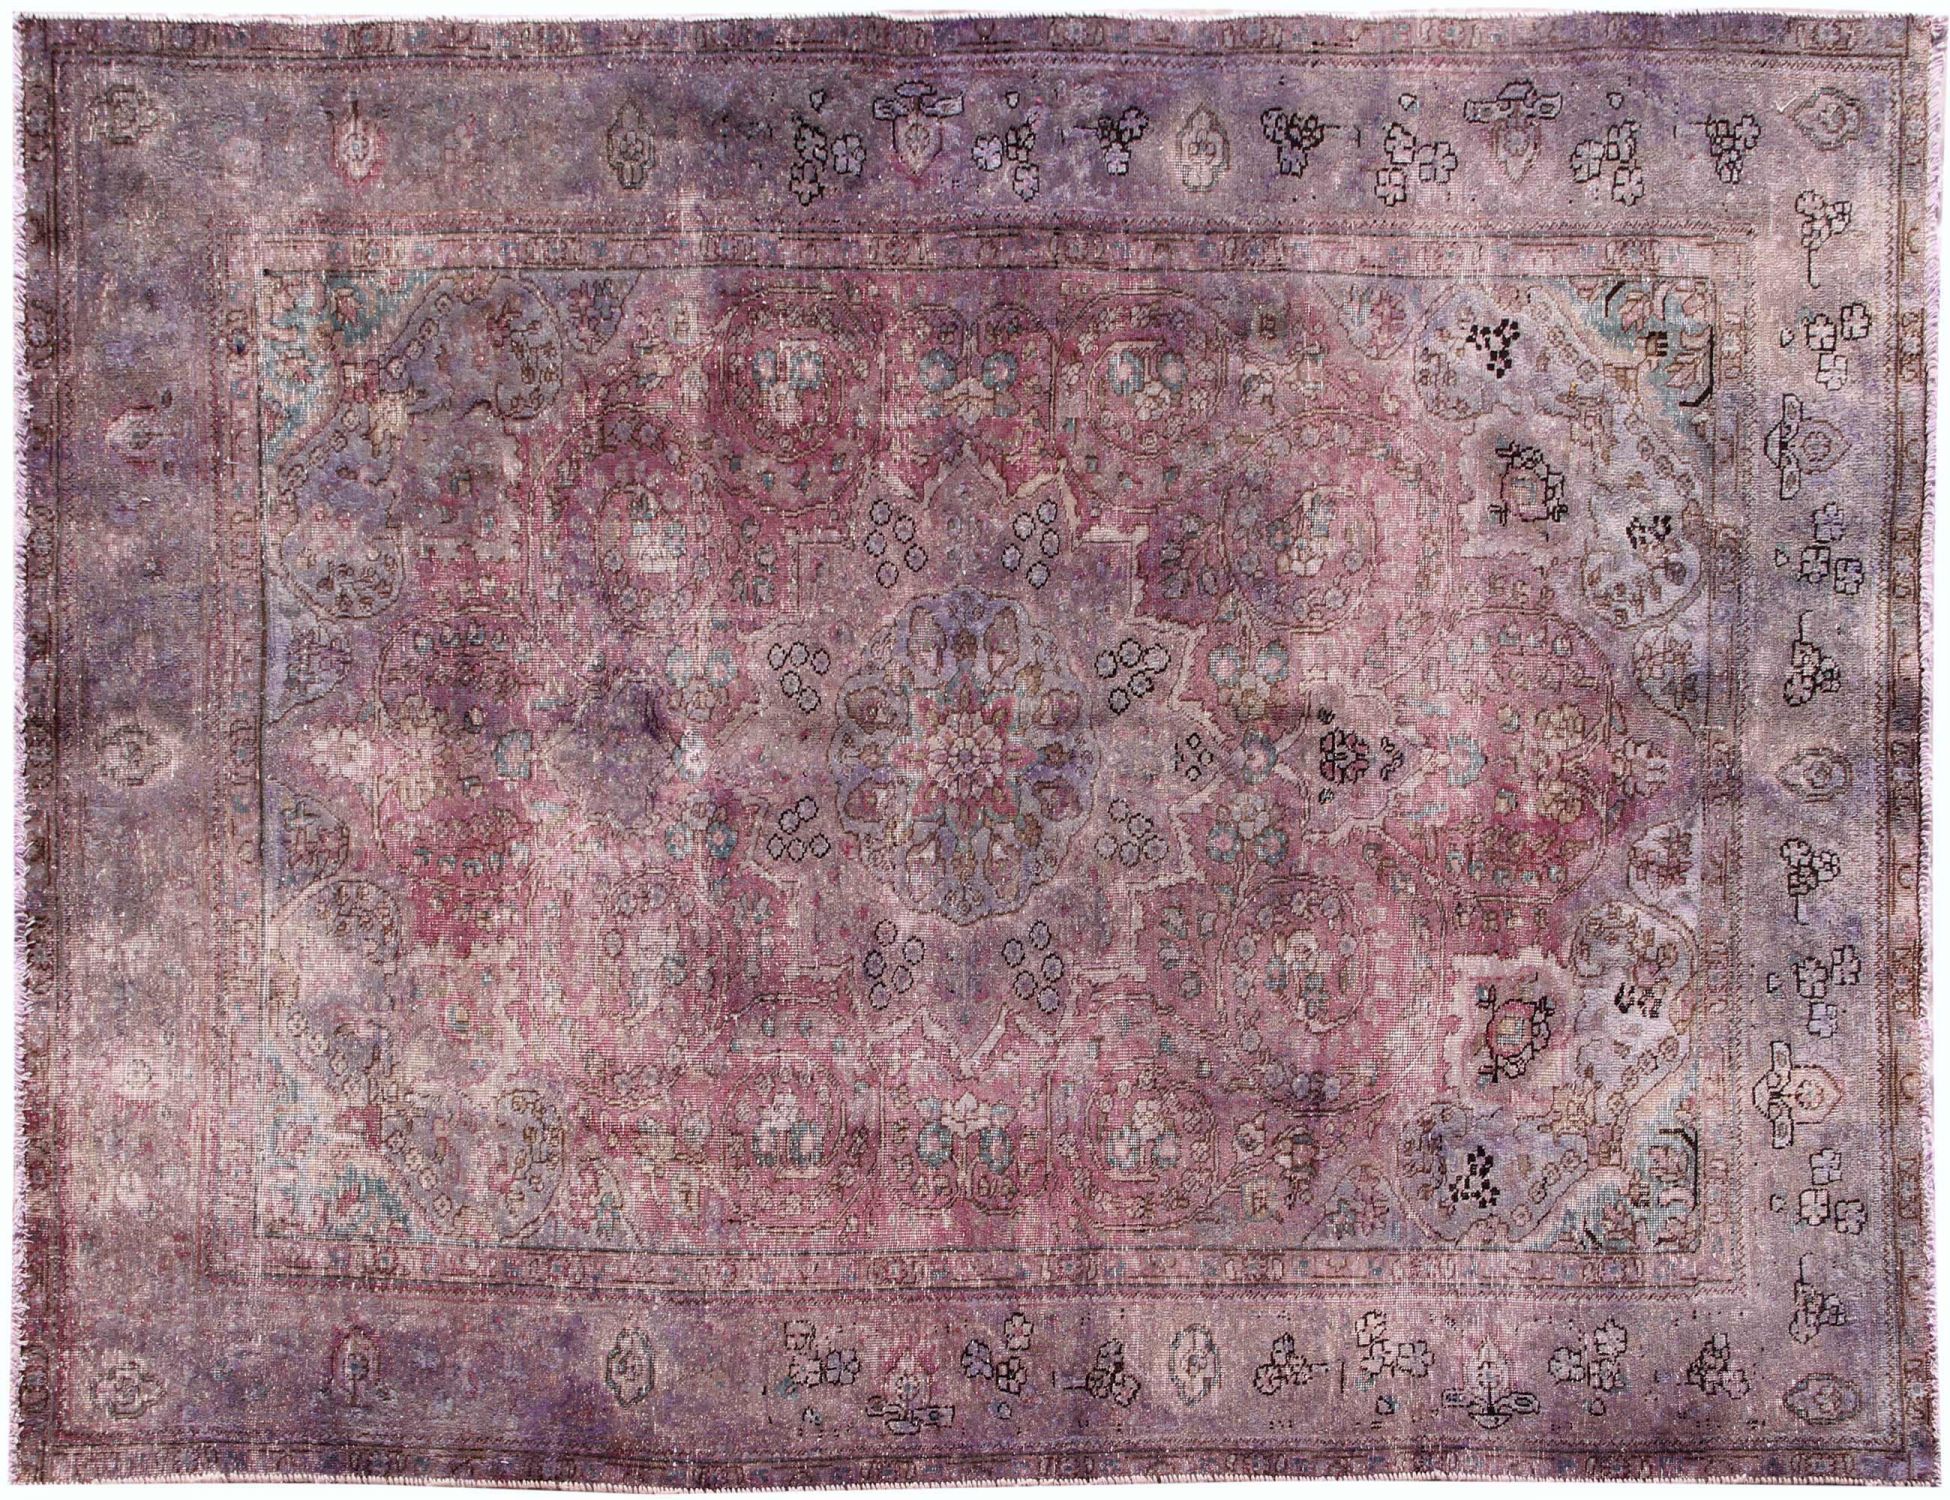 Persischer Vintage Teppich  lila <br/>290 x 200 cm